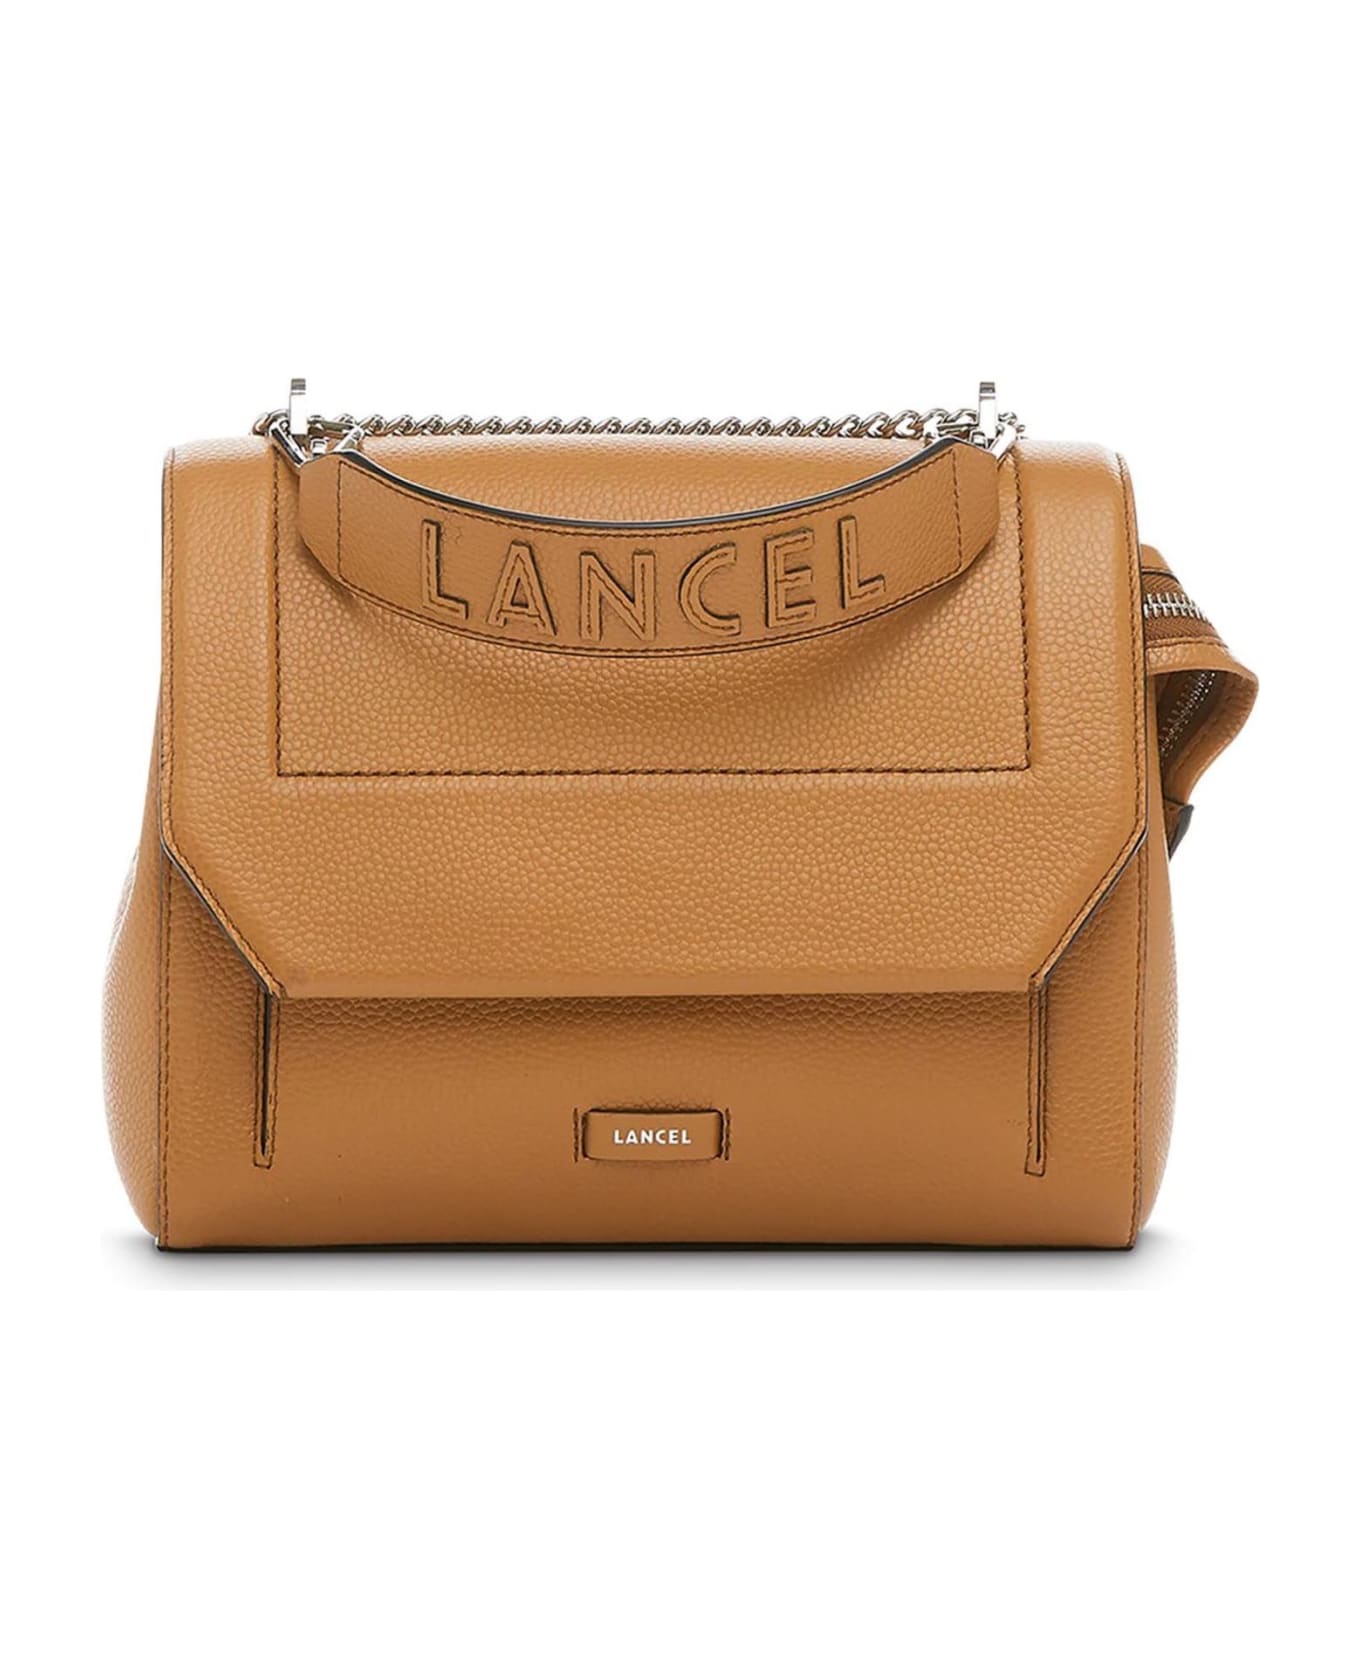 Lancel Camel Grained Leather Shoulder Bag - Beige ショルダーバッグ